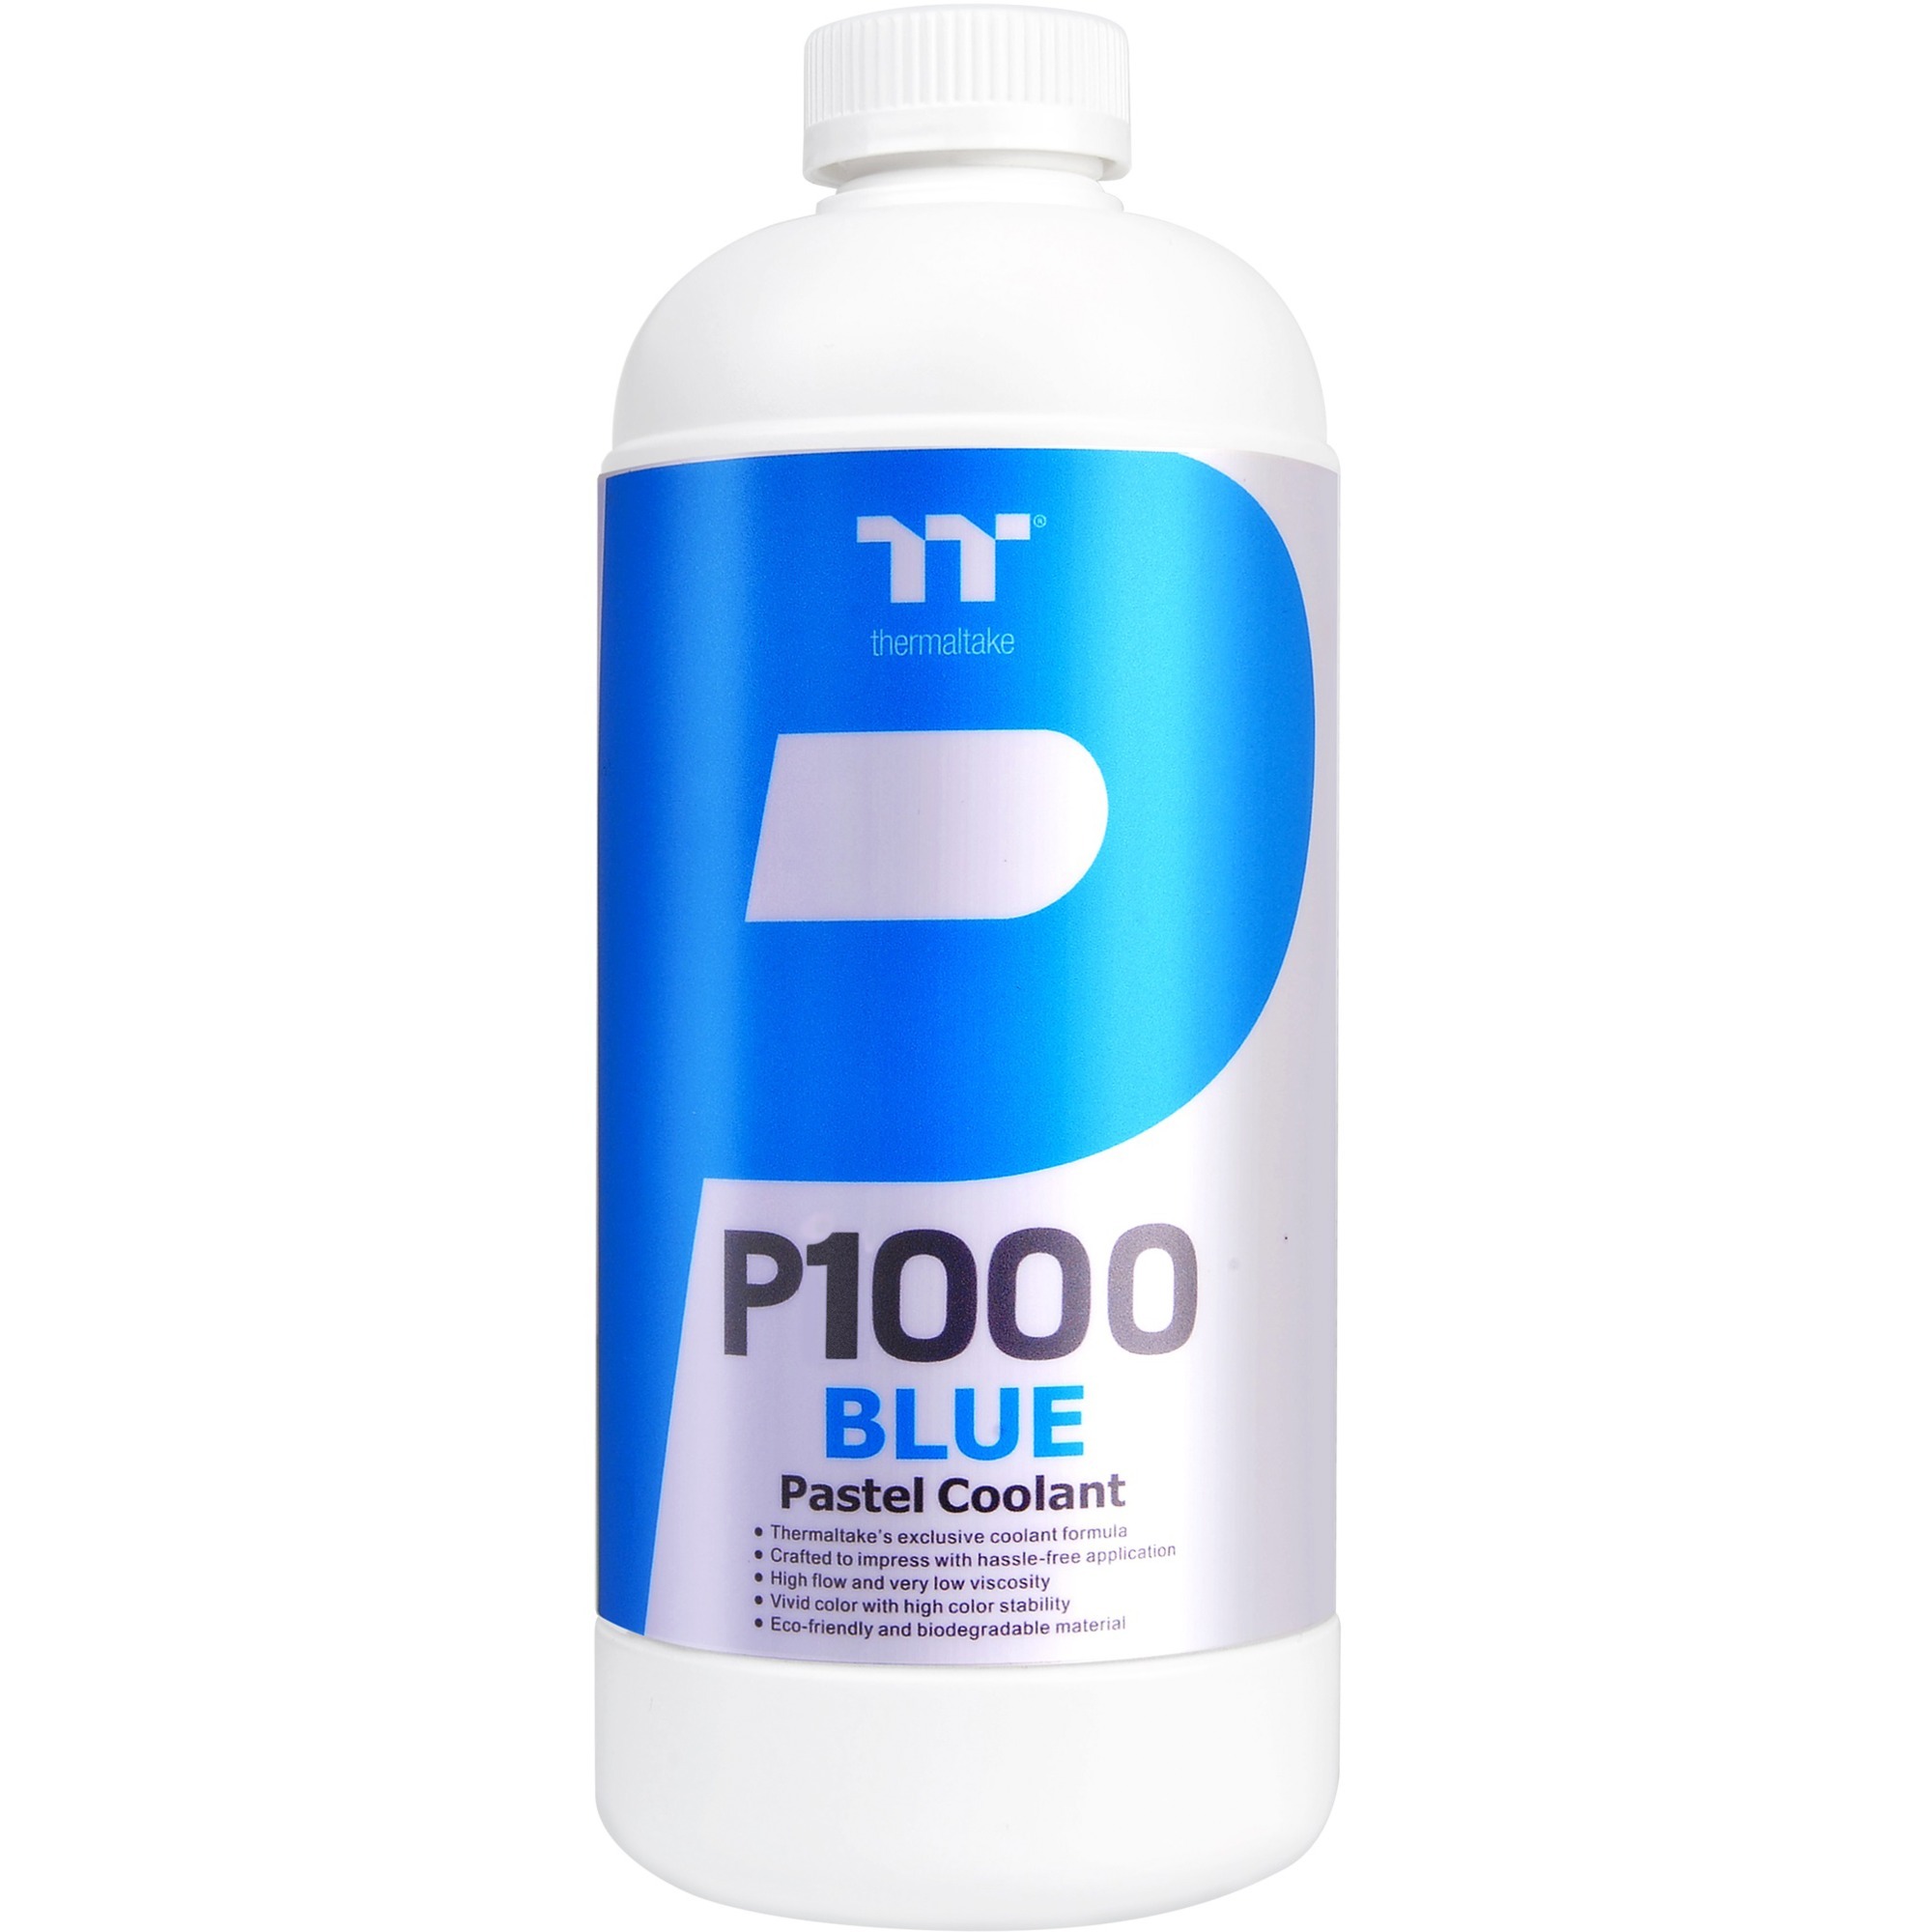 Image of Alternate - P1000 Pastel Coolant Blue 1000ml, Kühlmittel online einkaufen bei Alternate